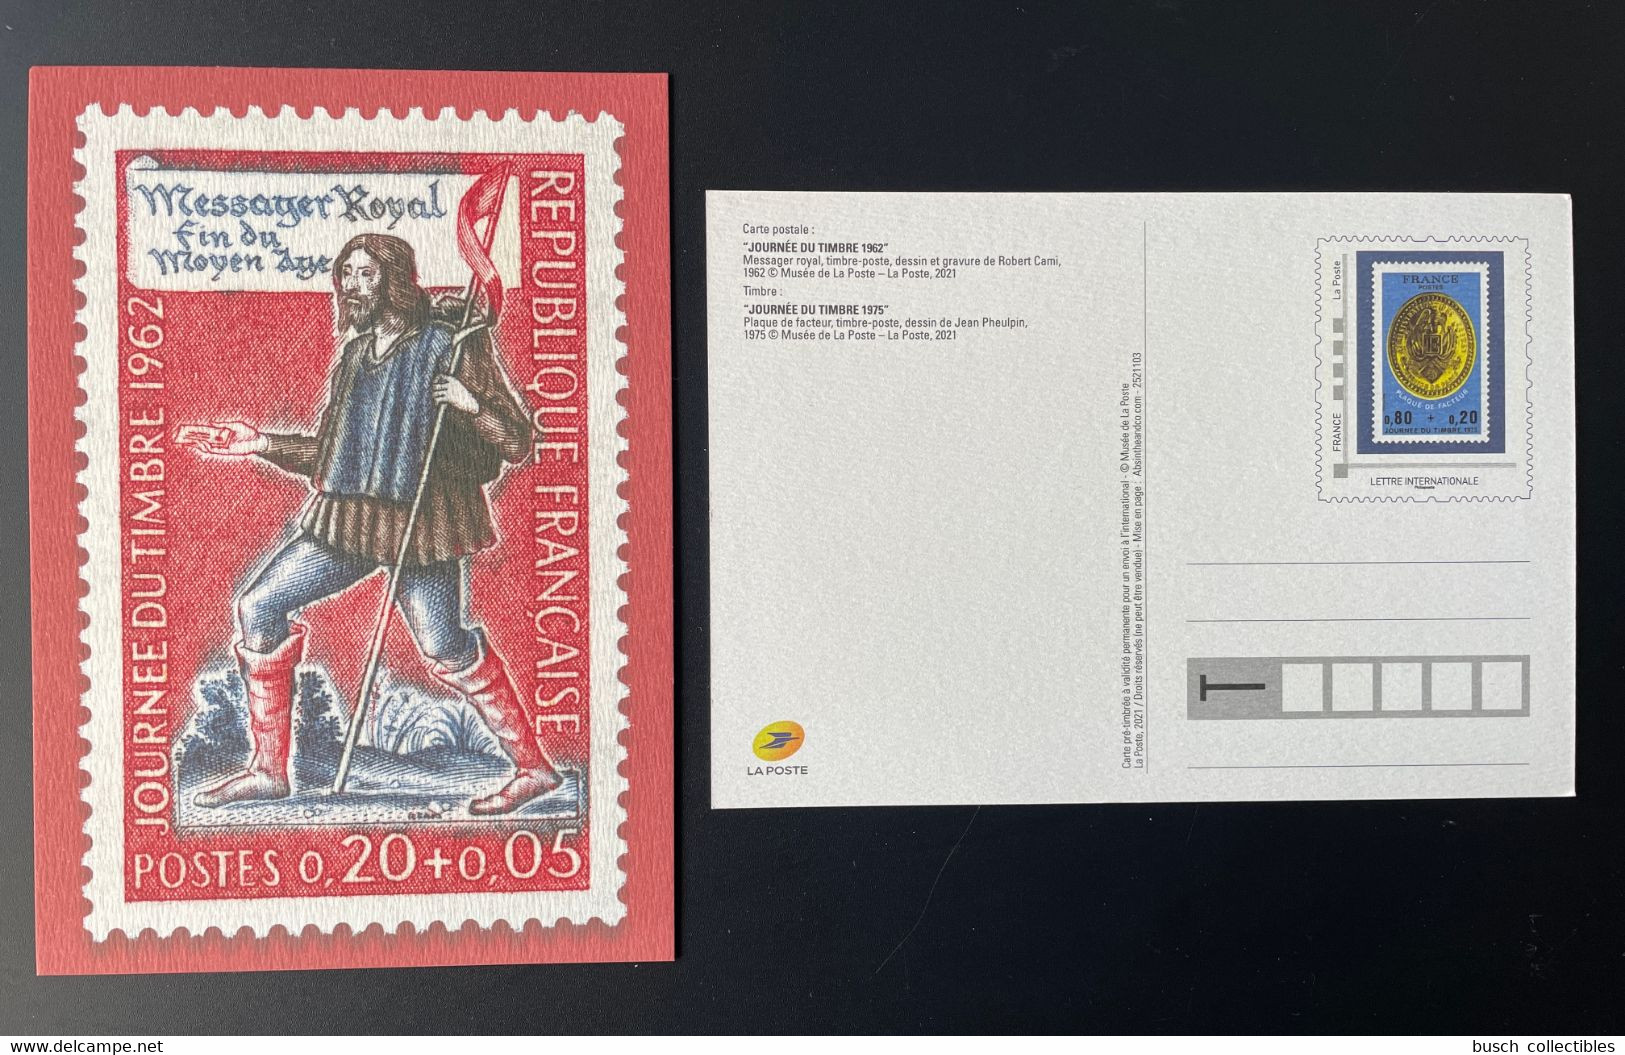 France 2021 - Carte Postale Entier Journée Du Timbre 1962 Messager Royal Fin Du Moyen Âge - Pseudo-interi Di Produzione Ufficiale